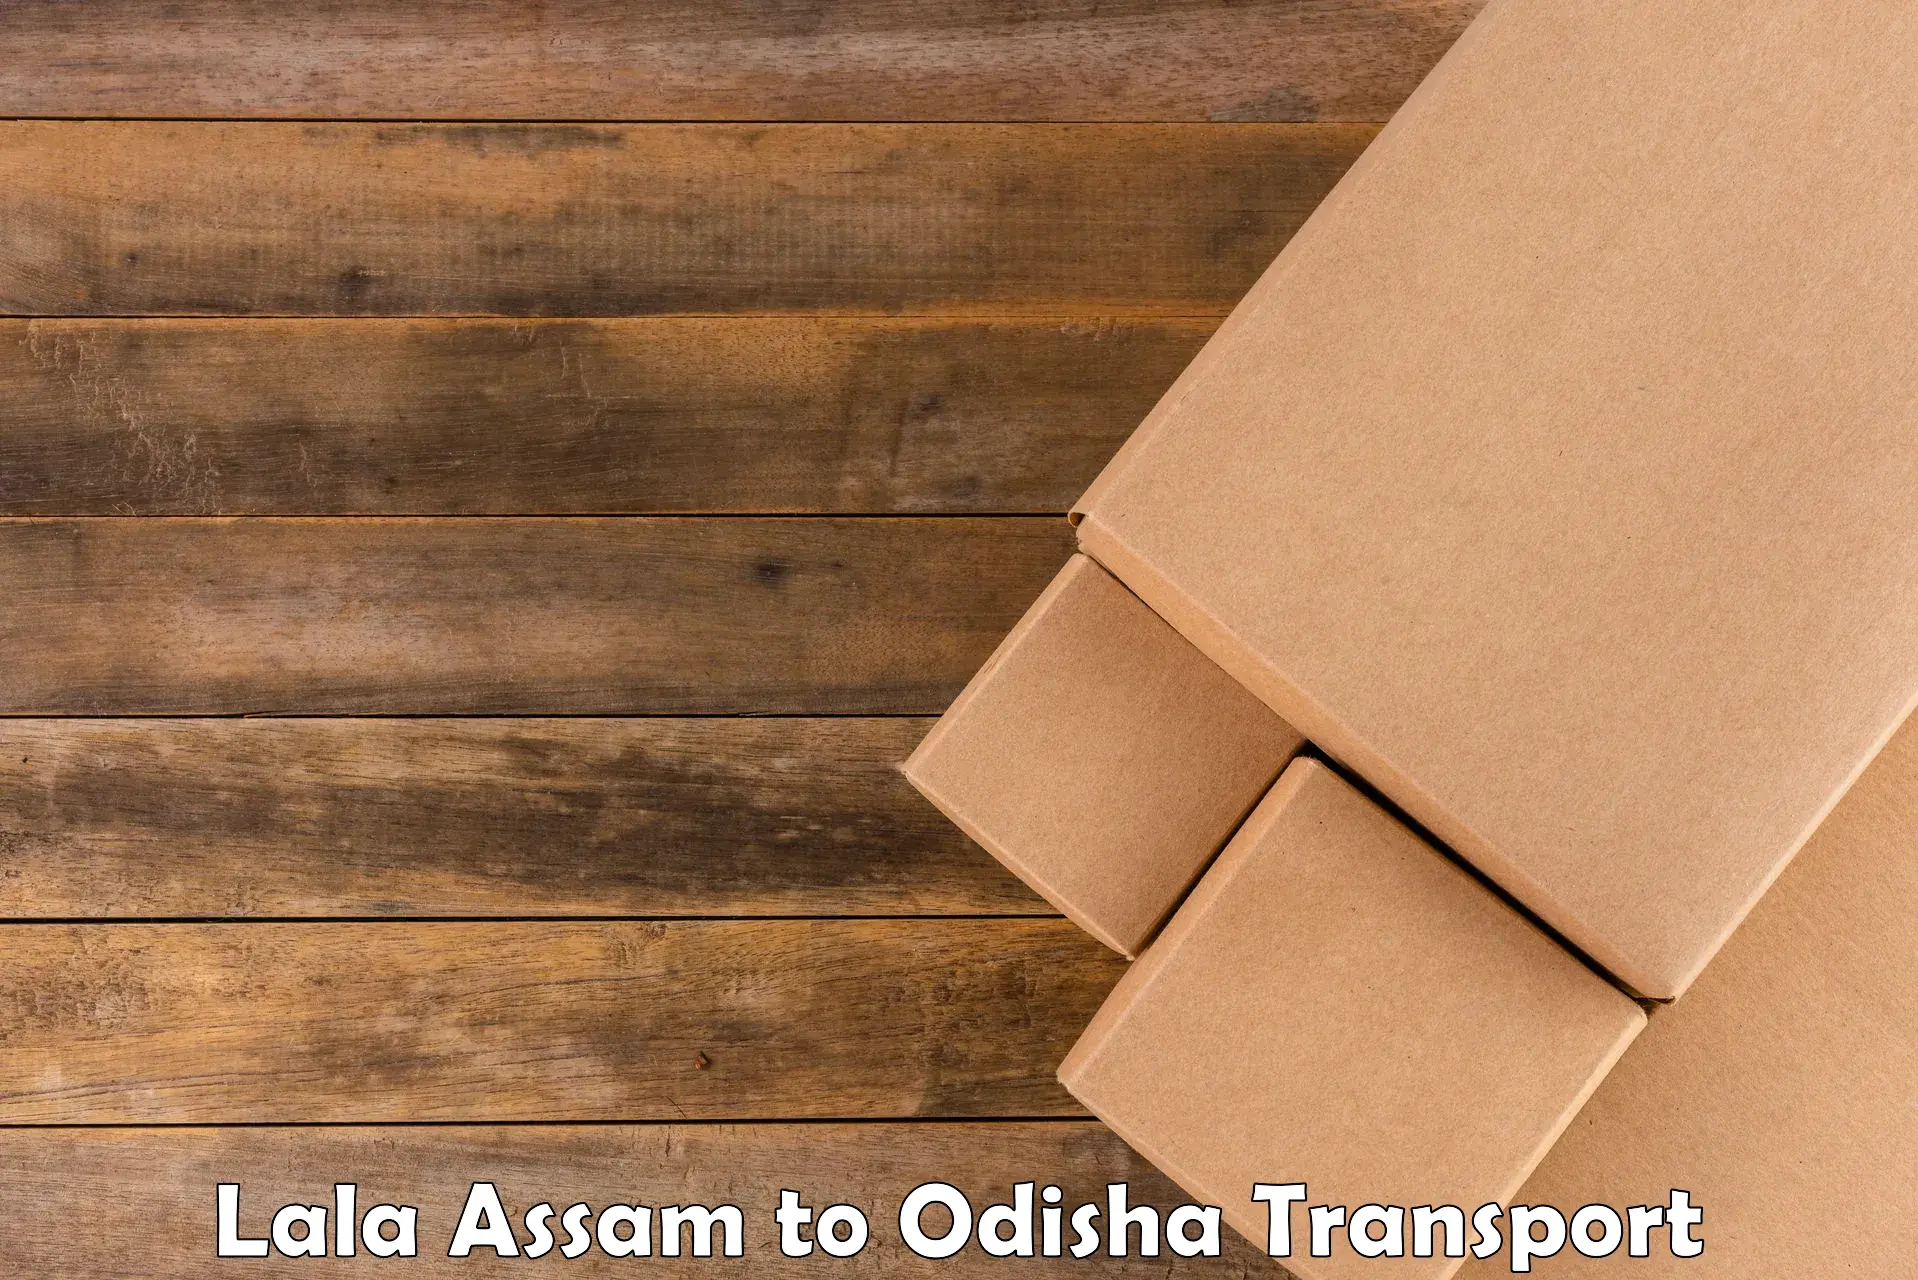 Commercial transport service Lala Assam to Bhanjanagar